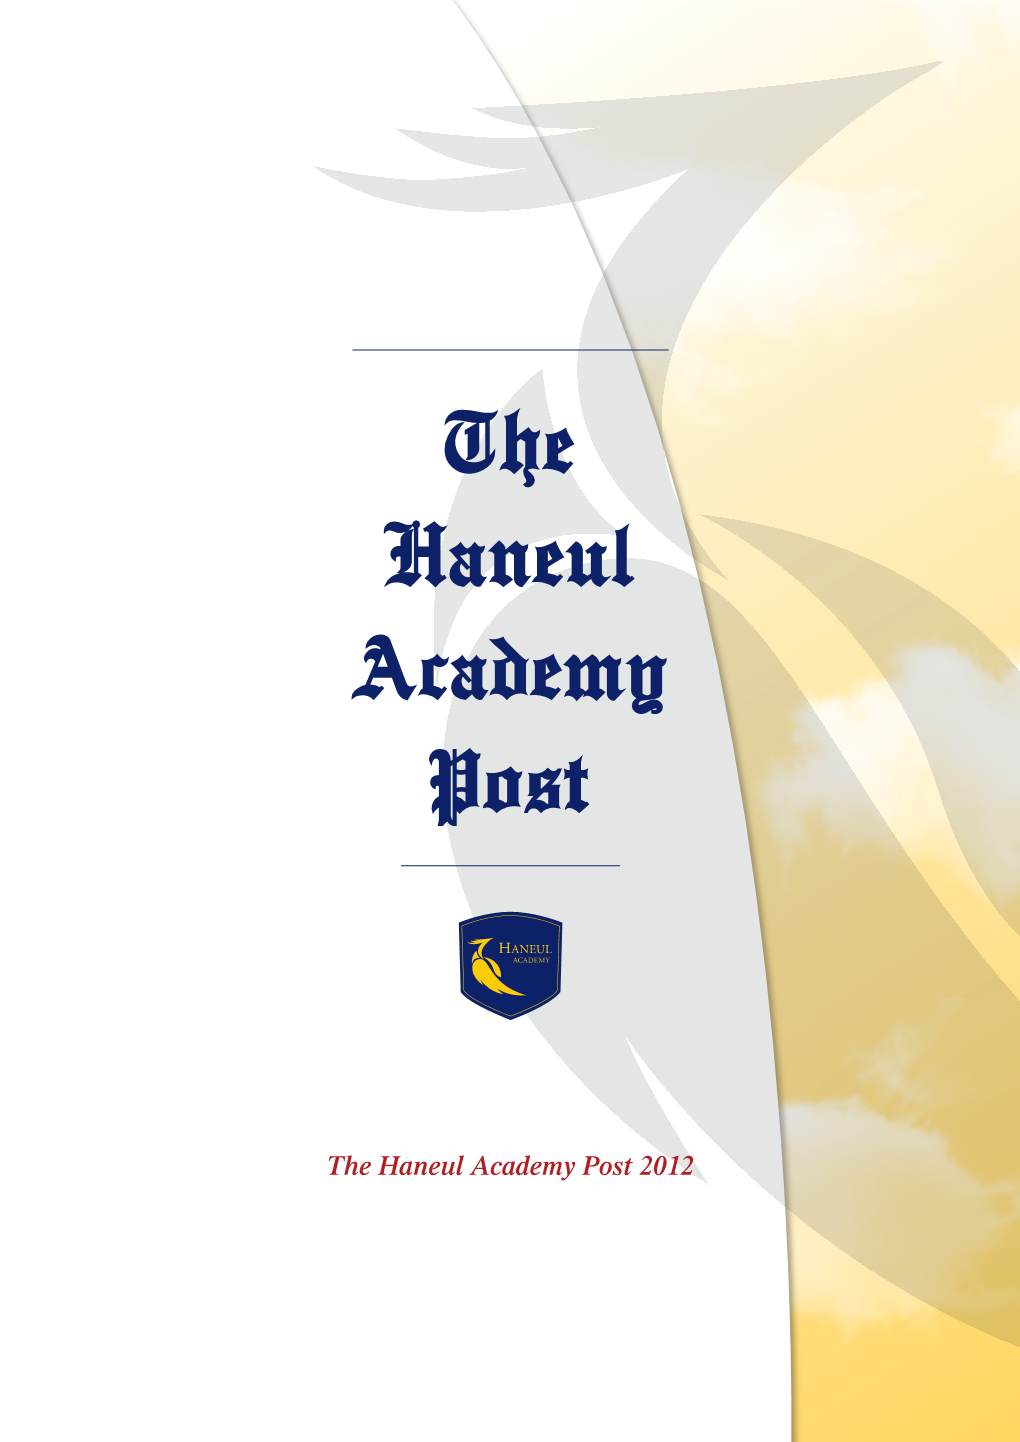 The Haneul Academy Post